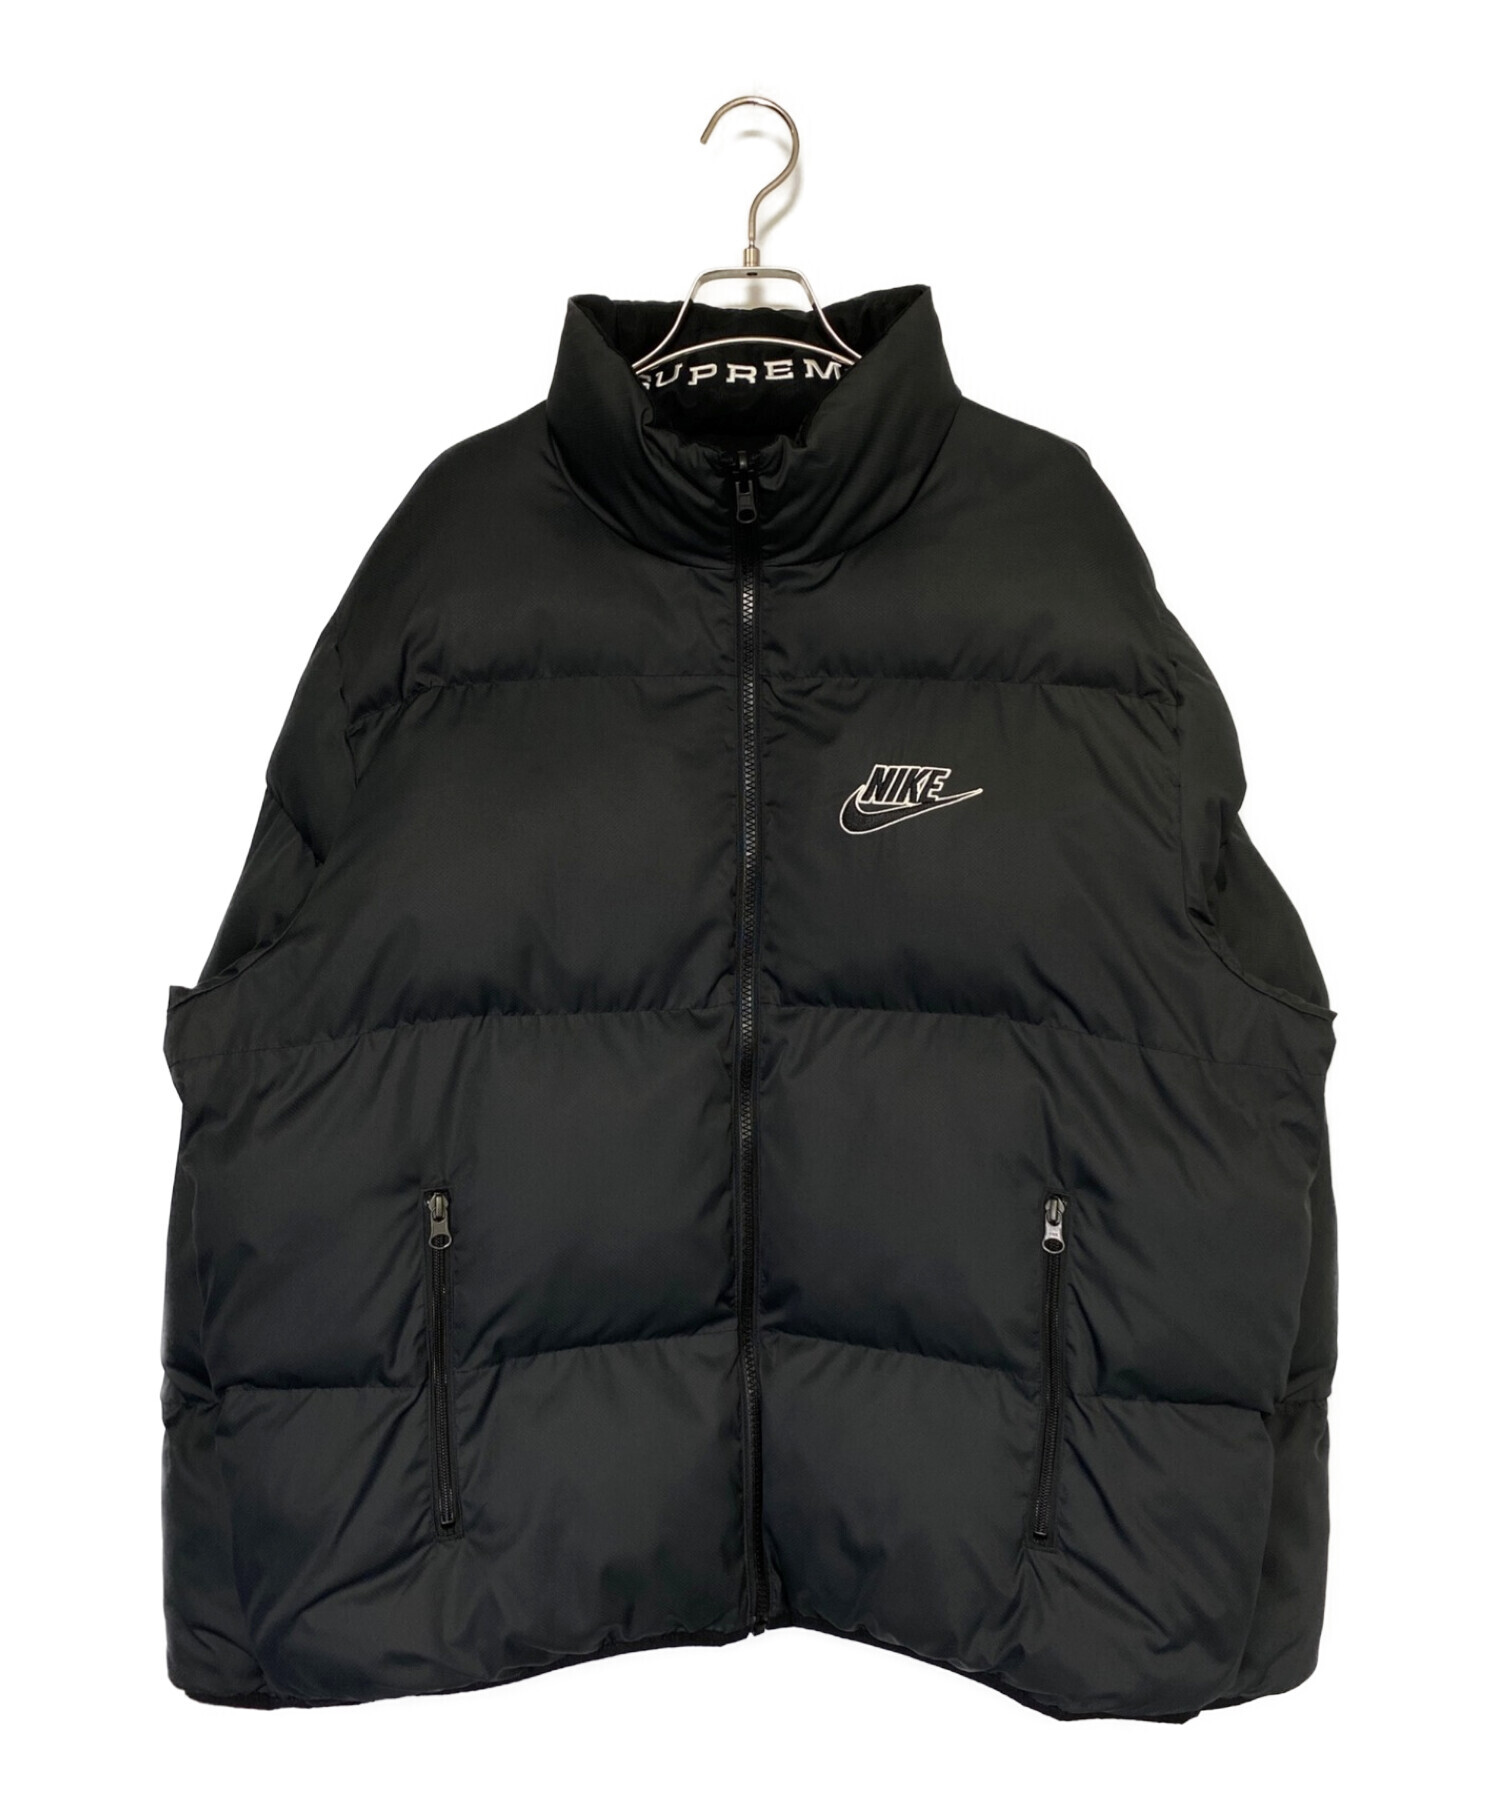 22,908円Supreme✖️Nike Reversible Puffy Jacket